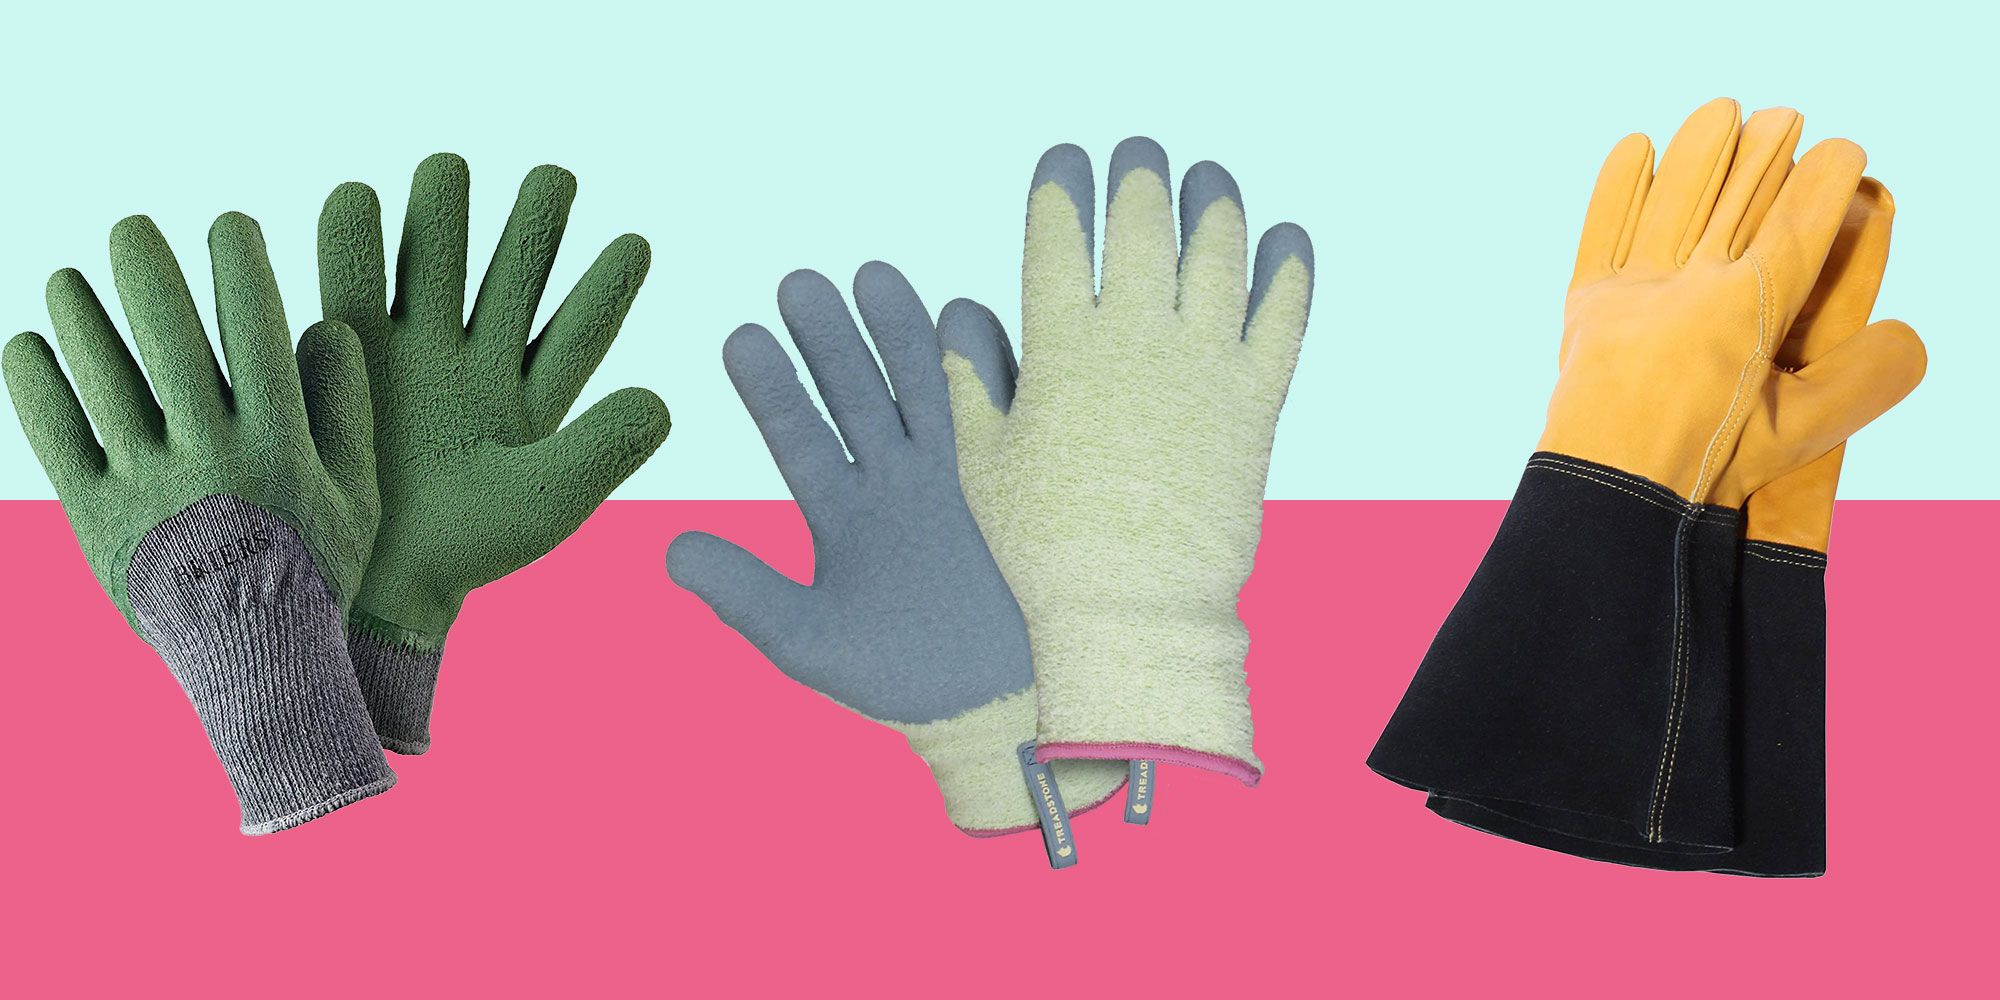 Best gardening gloves - 10 of the best gardening gloves in 2020